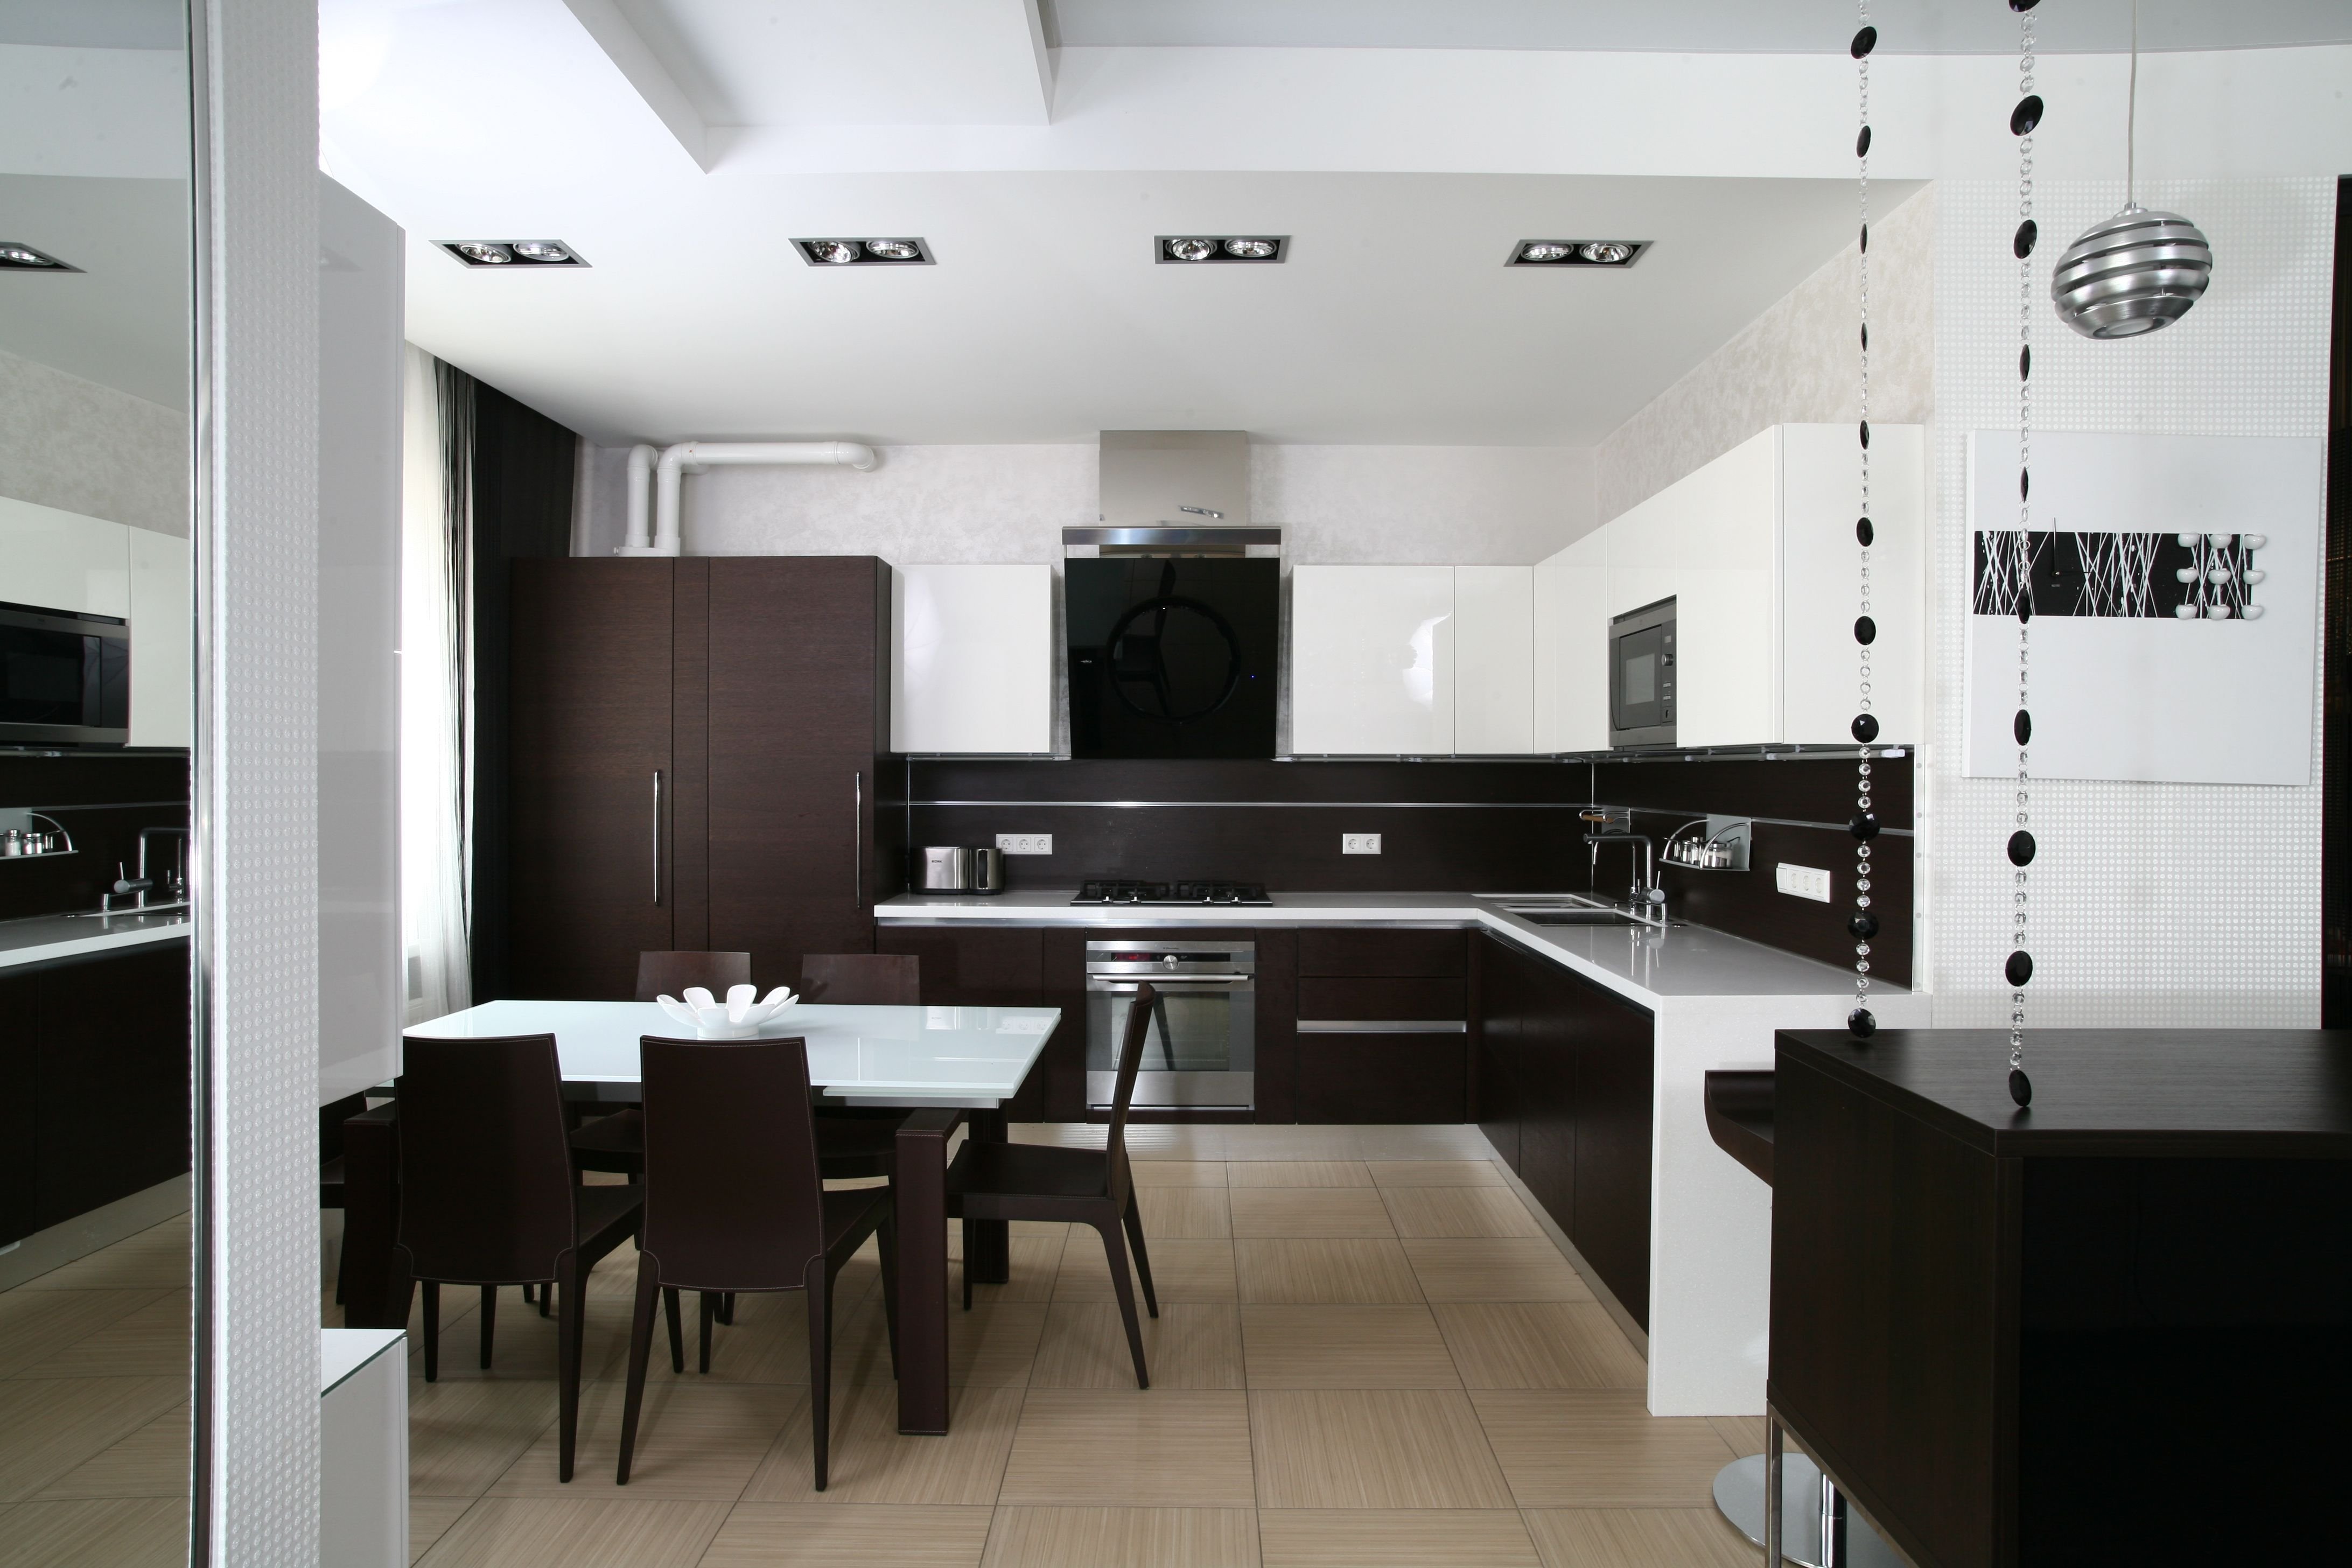 Кухня гостиная черная. Бело черная кухня гостиная. Кухня Минимализм. Черно белая кухня гостиная. Интерьер кухни в черно белом стиле.